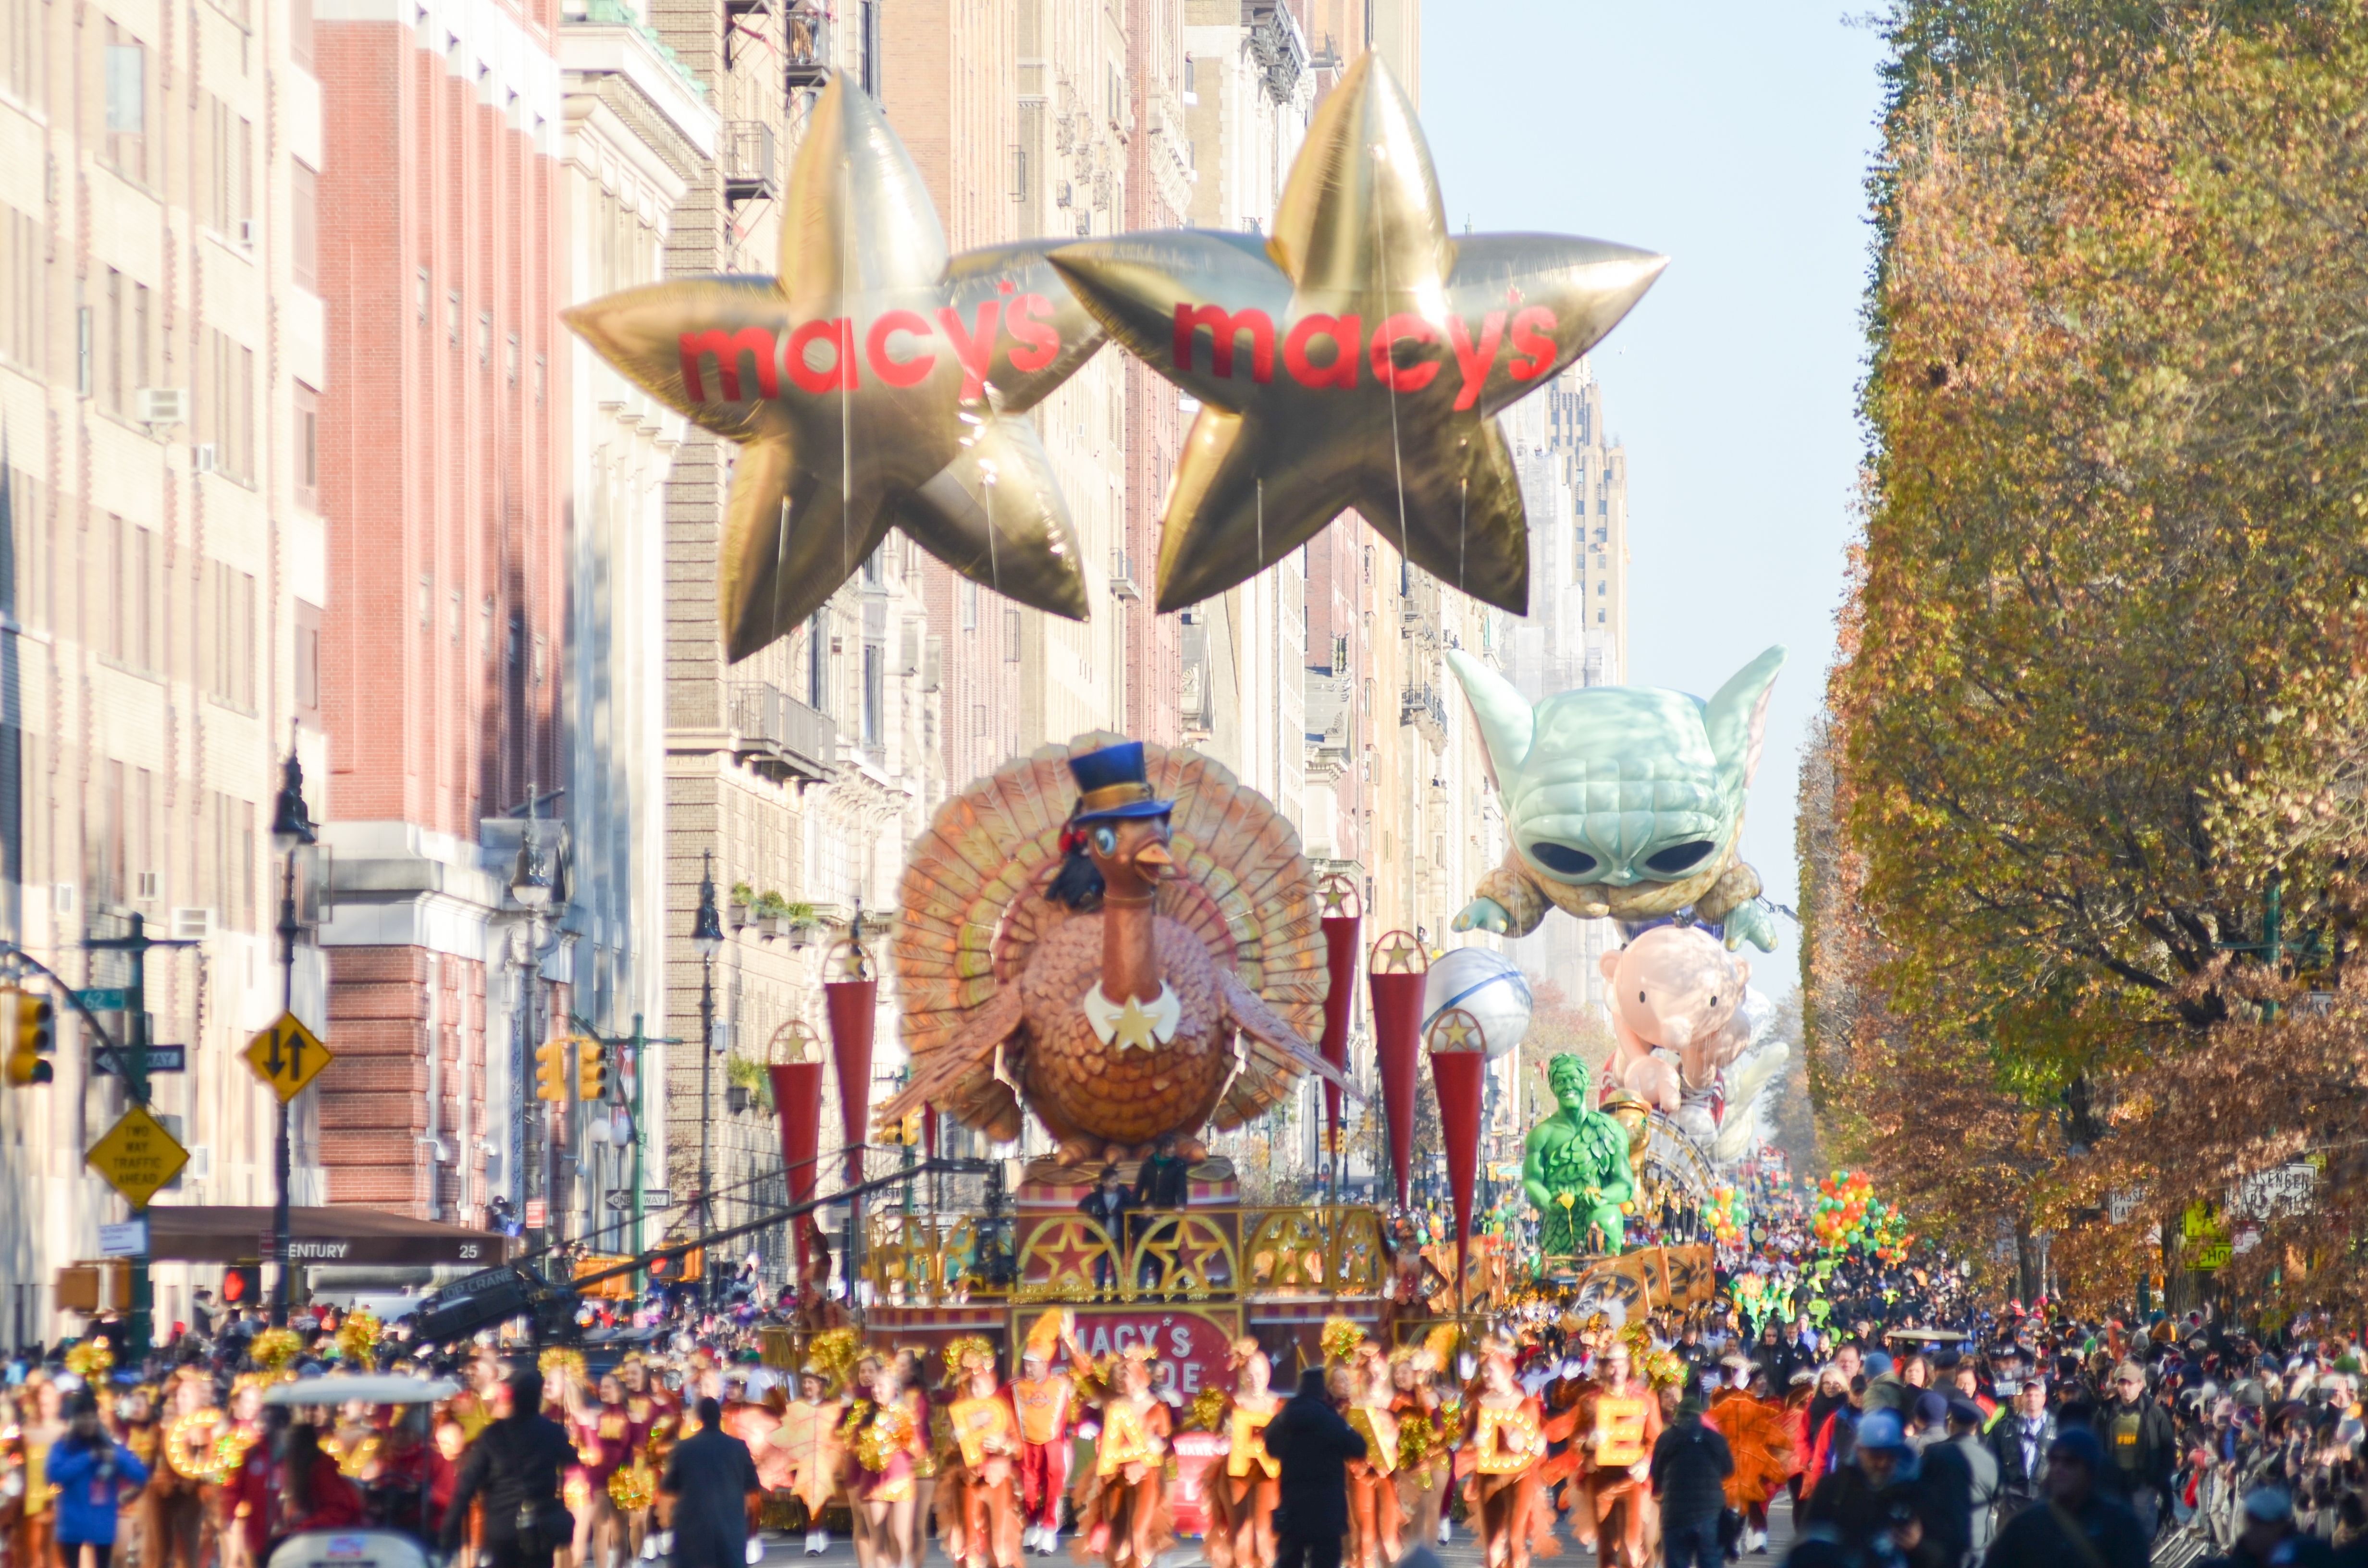 Die 96. jährliche Macy's Thanksgiving Day Parade | Quelle: Shutterstock